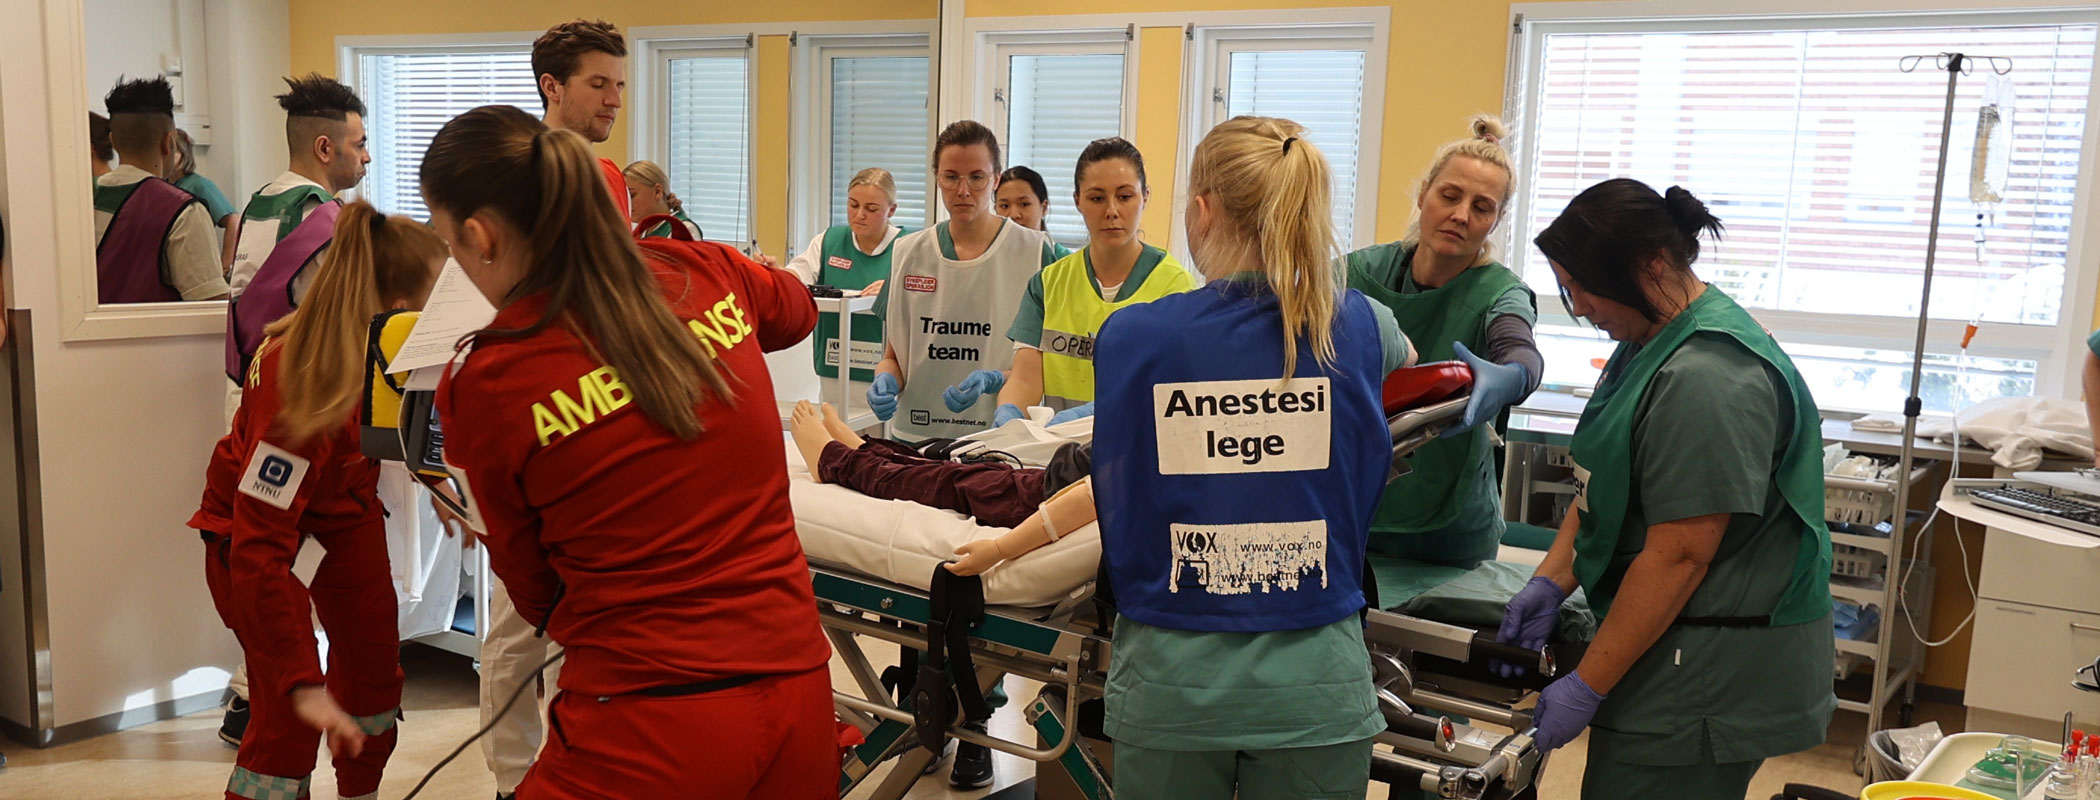 På NTNU på Gjøvik har paramedisin-studenter hatt traumeuke i samarbeid med andre helsearbeid-studier. Foto: Jørn Finsrud.